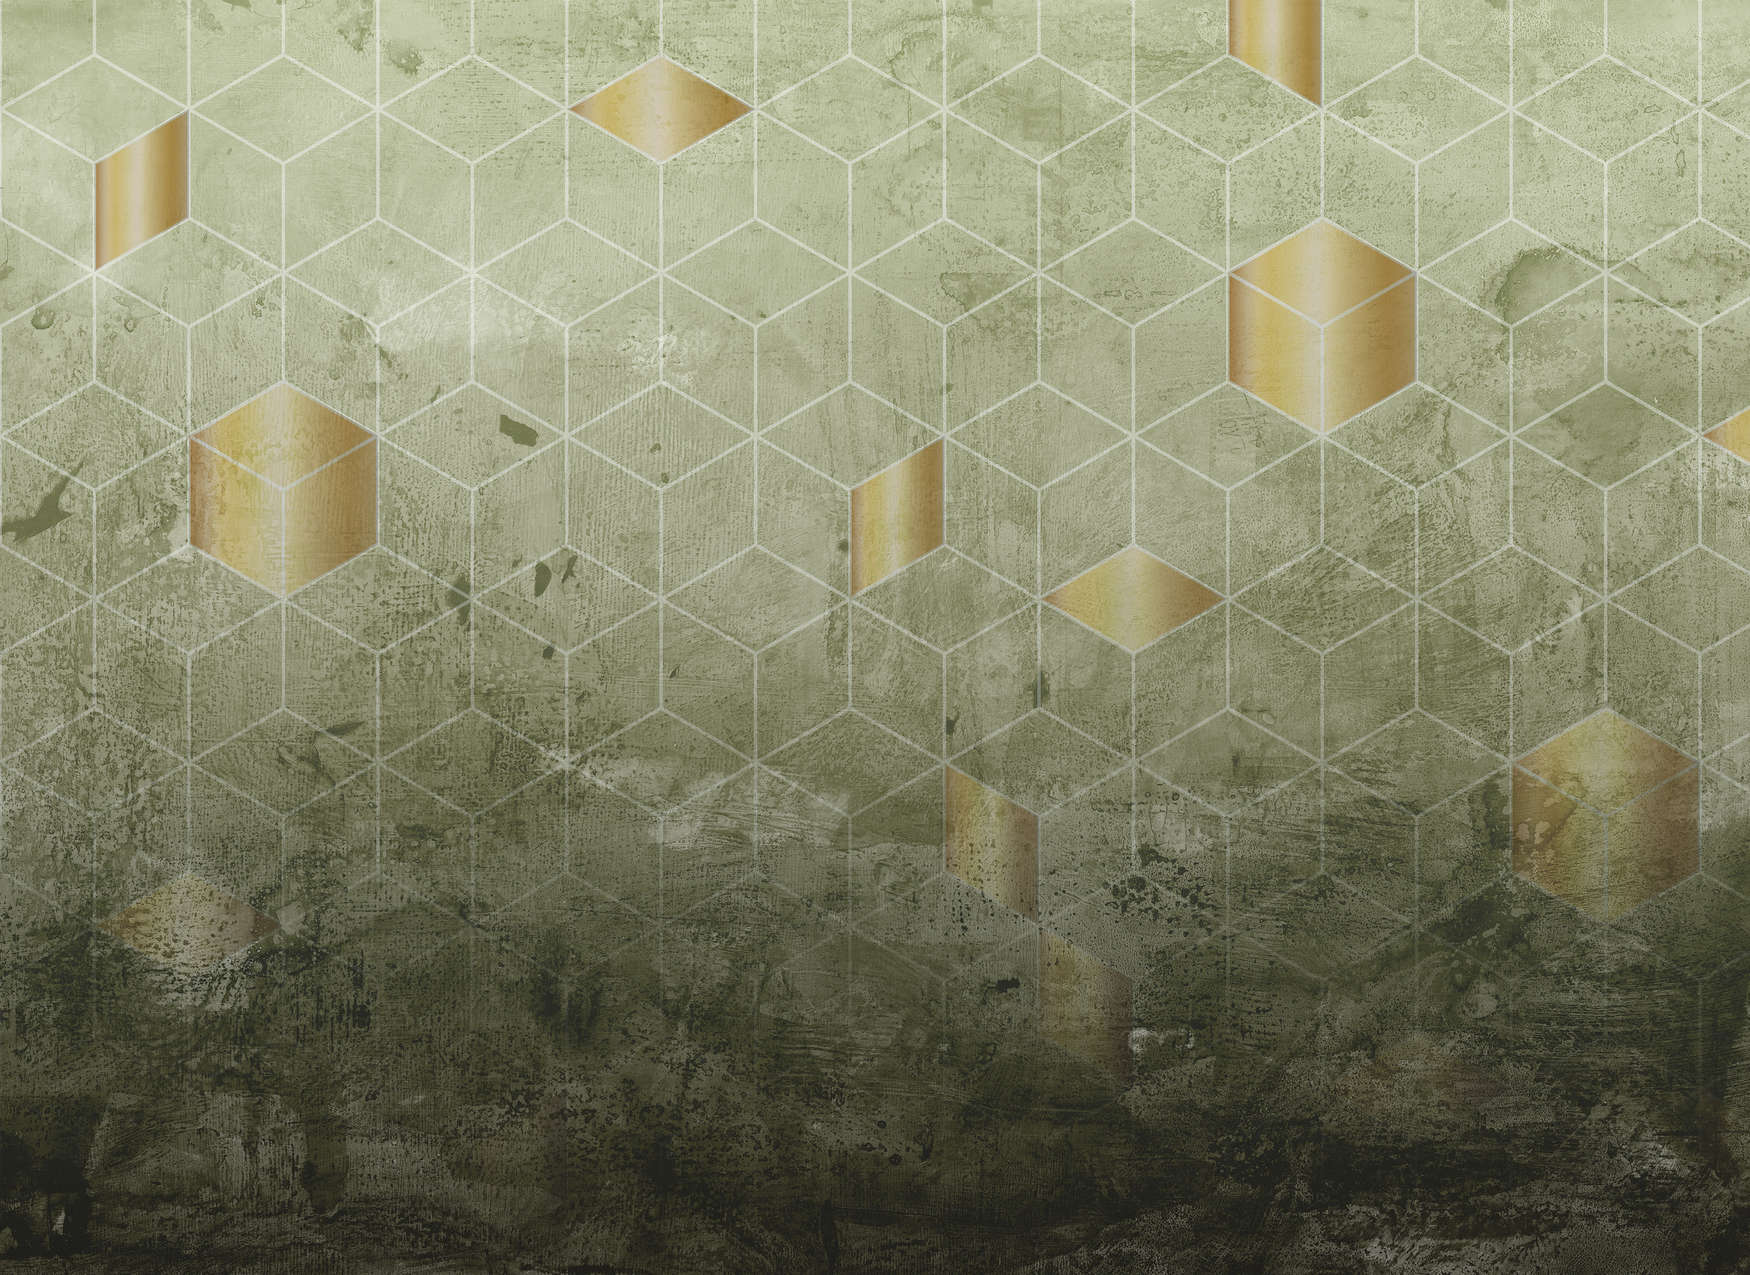             Digital behang vierkant patroon met 3D effect - groen, goud
        